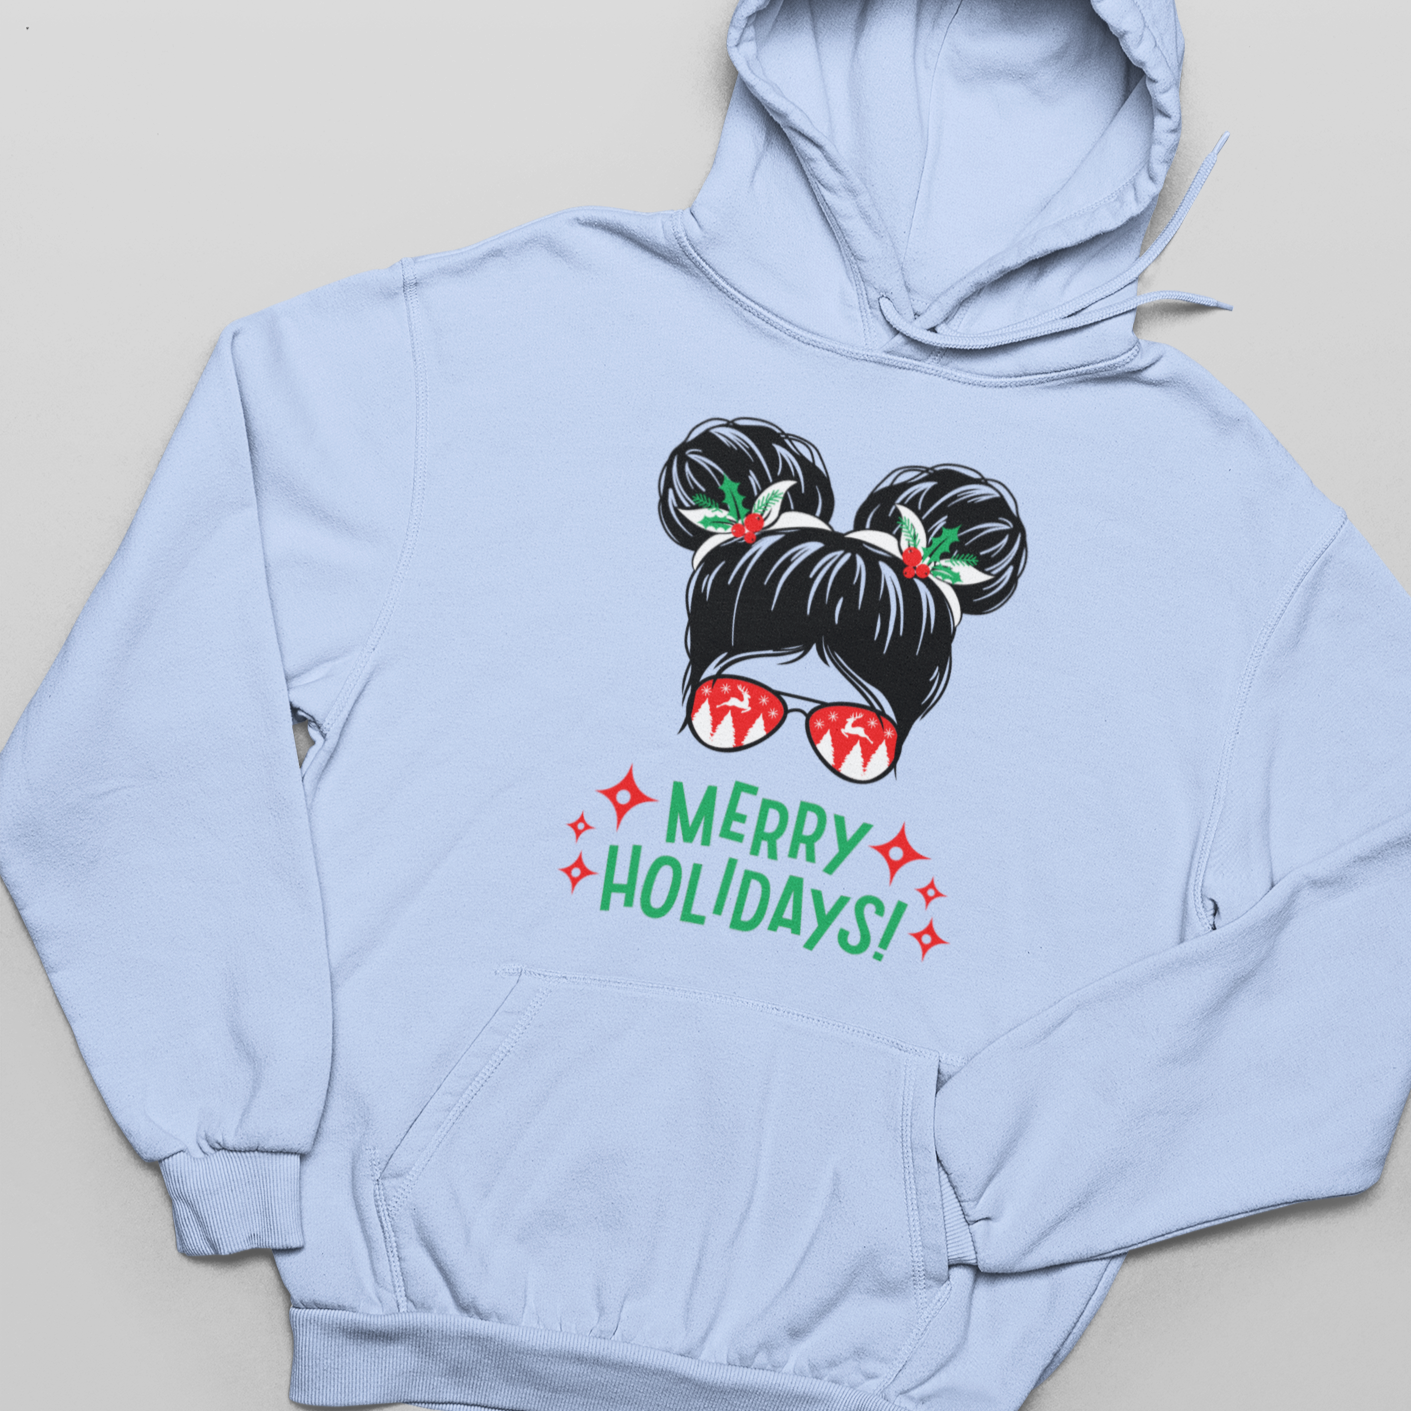 Merry Holidays Girl - Ladies, Women's Pullover Hoodie